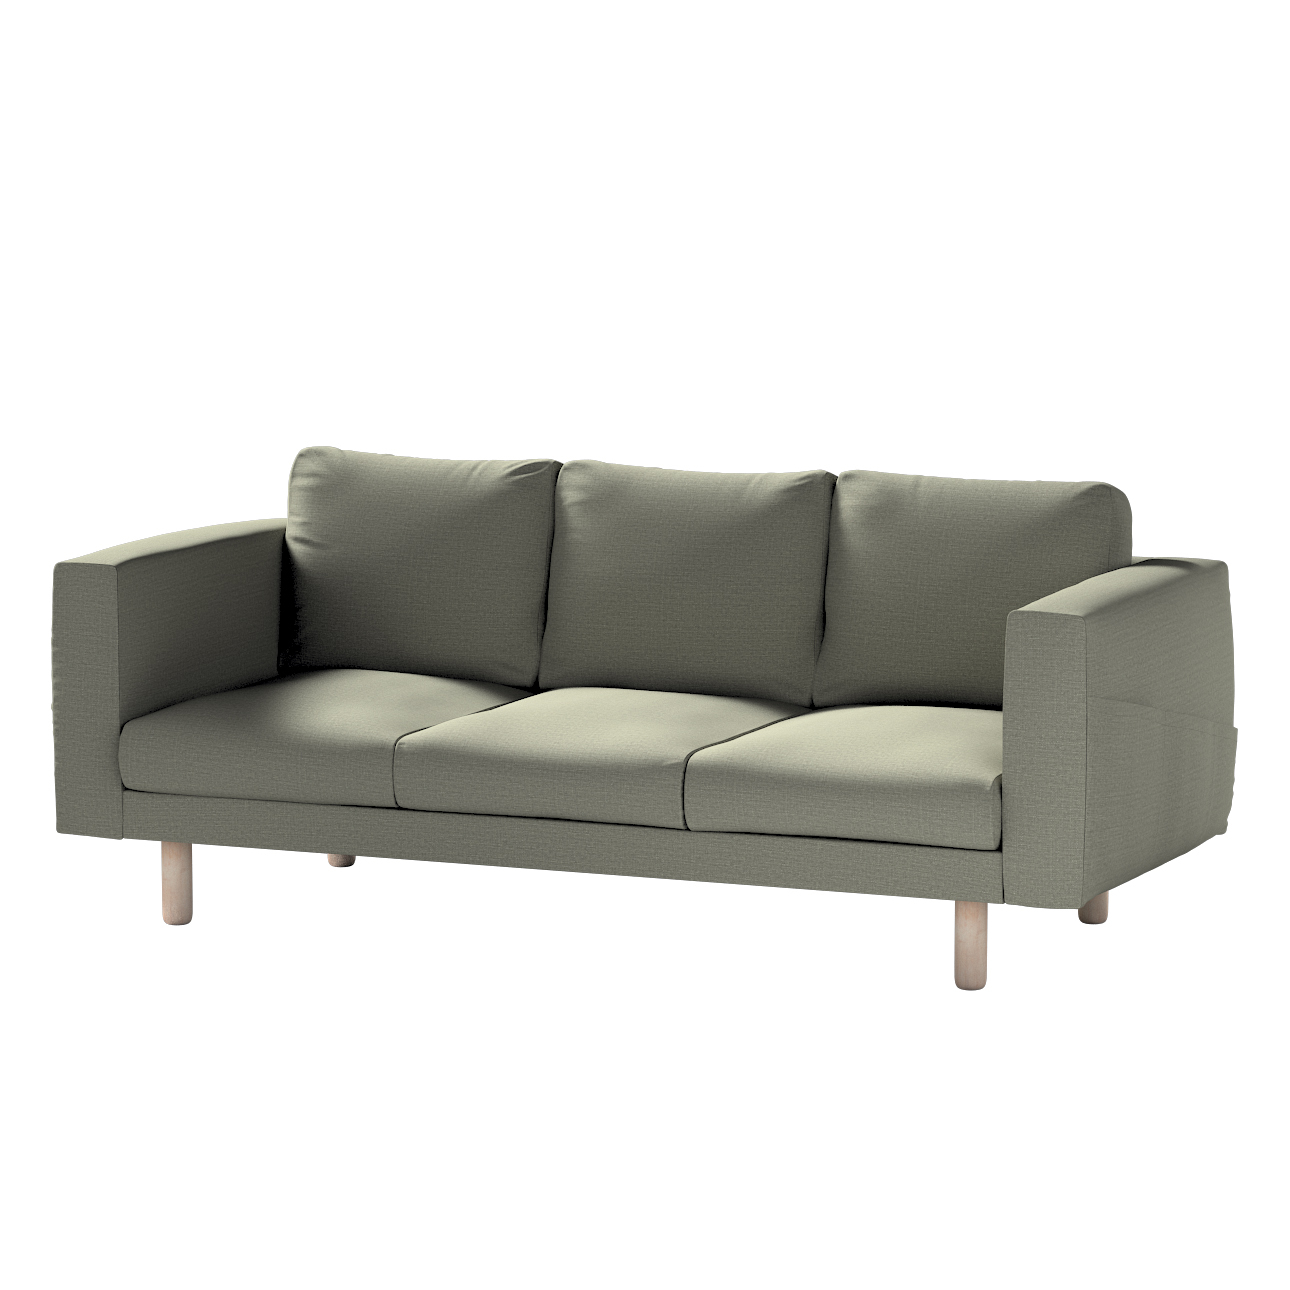 Bezug für Norsborg 3-Sitzer Sofa, grau-beige, Norsborg 3-Sitzer Sofabezug, günstig online kaufen